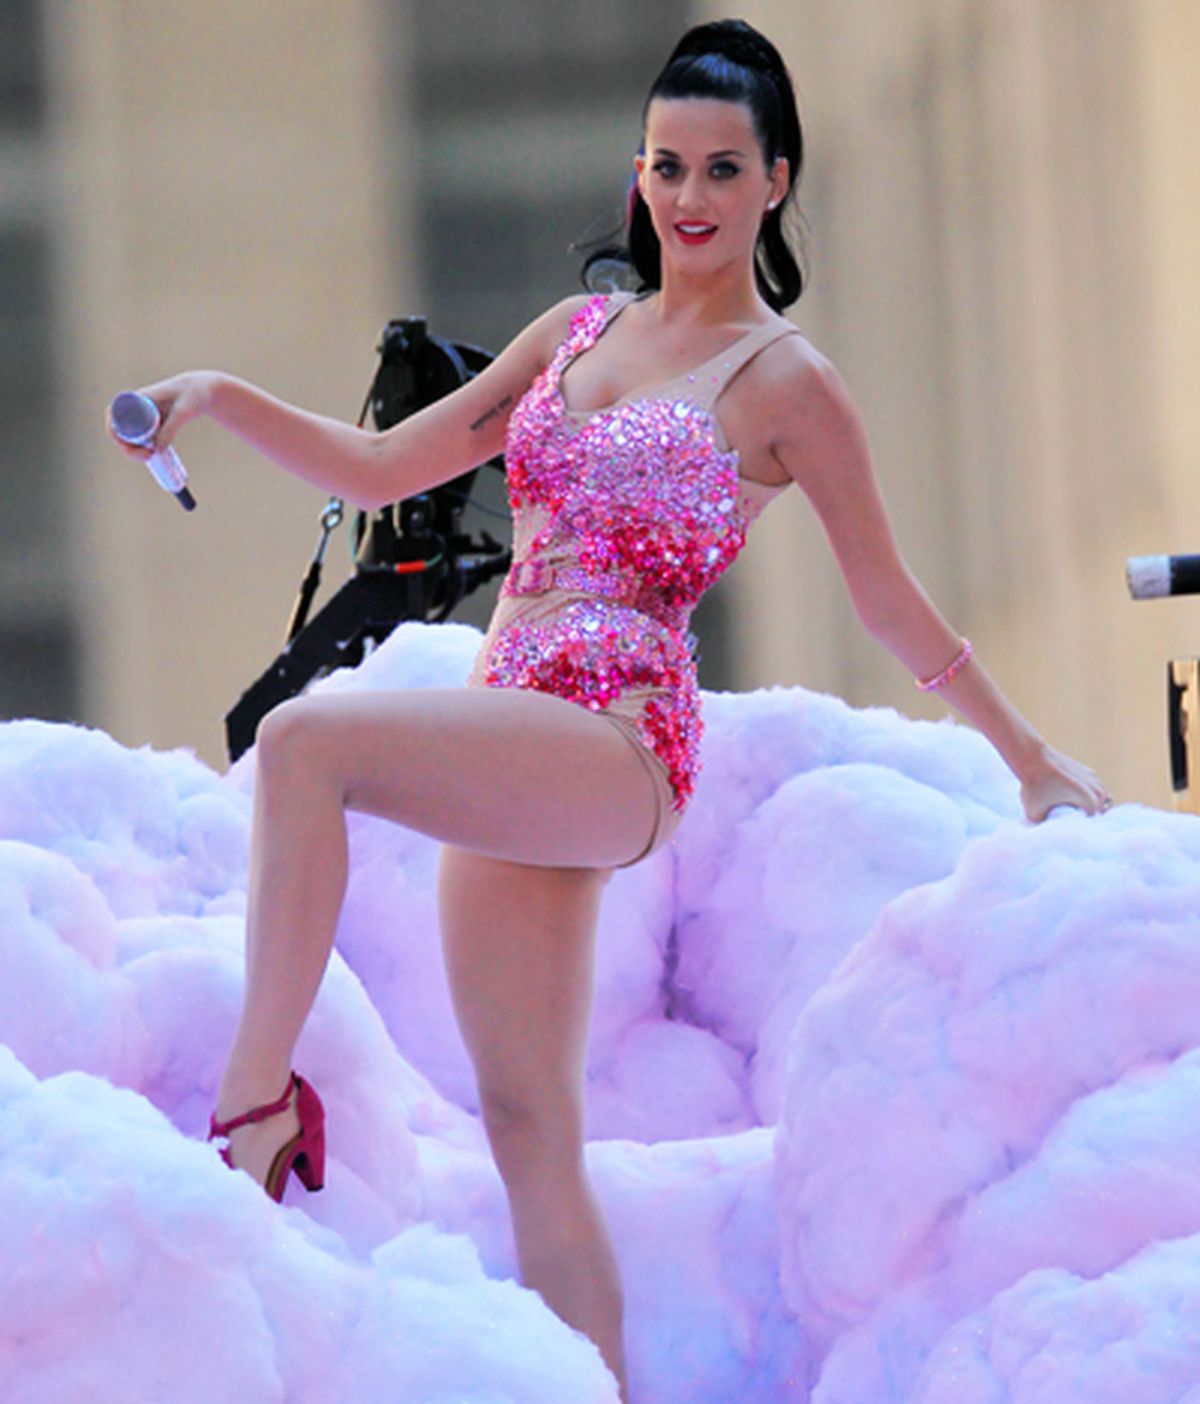 Katy Perry, 'aficionada' a robar almohadas y todo lo que se le ponga delante en los hoteles.